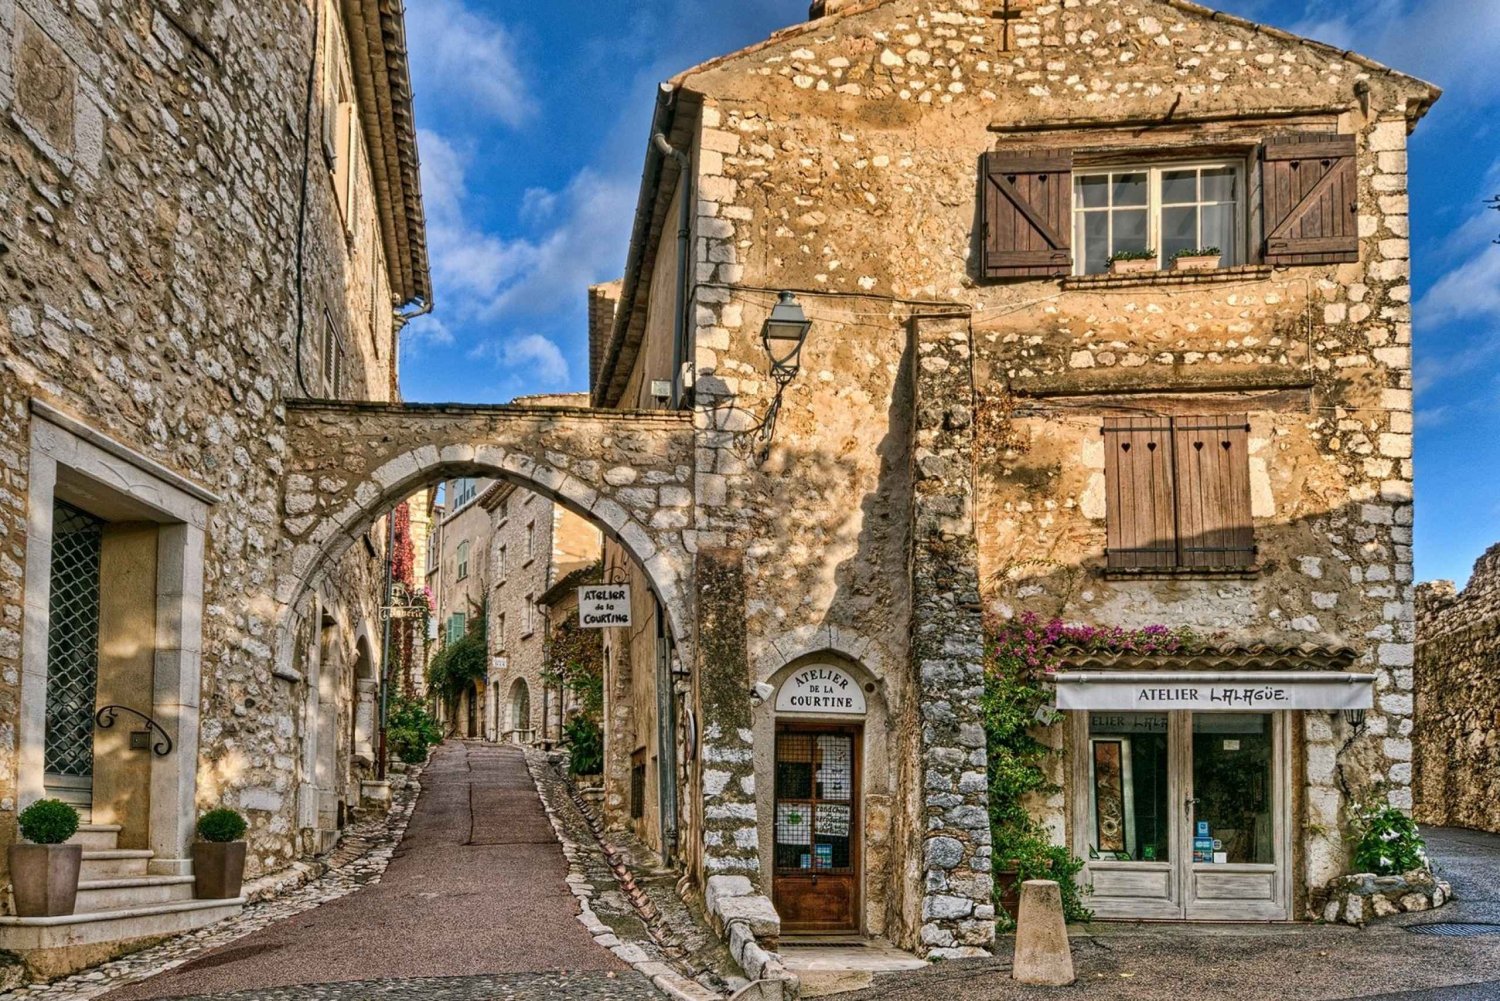 Nice: Passeio guiado de dia inteiro pelas vilas medievais